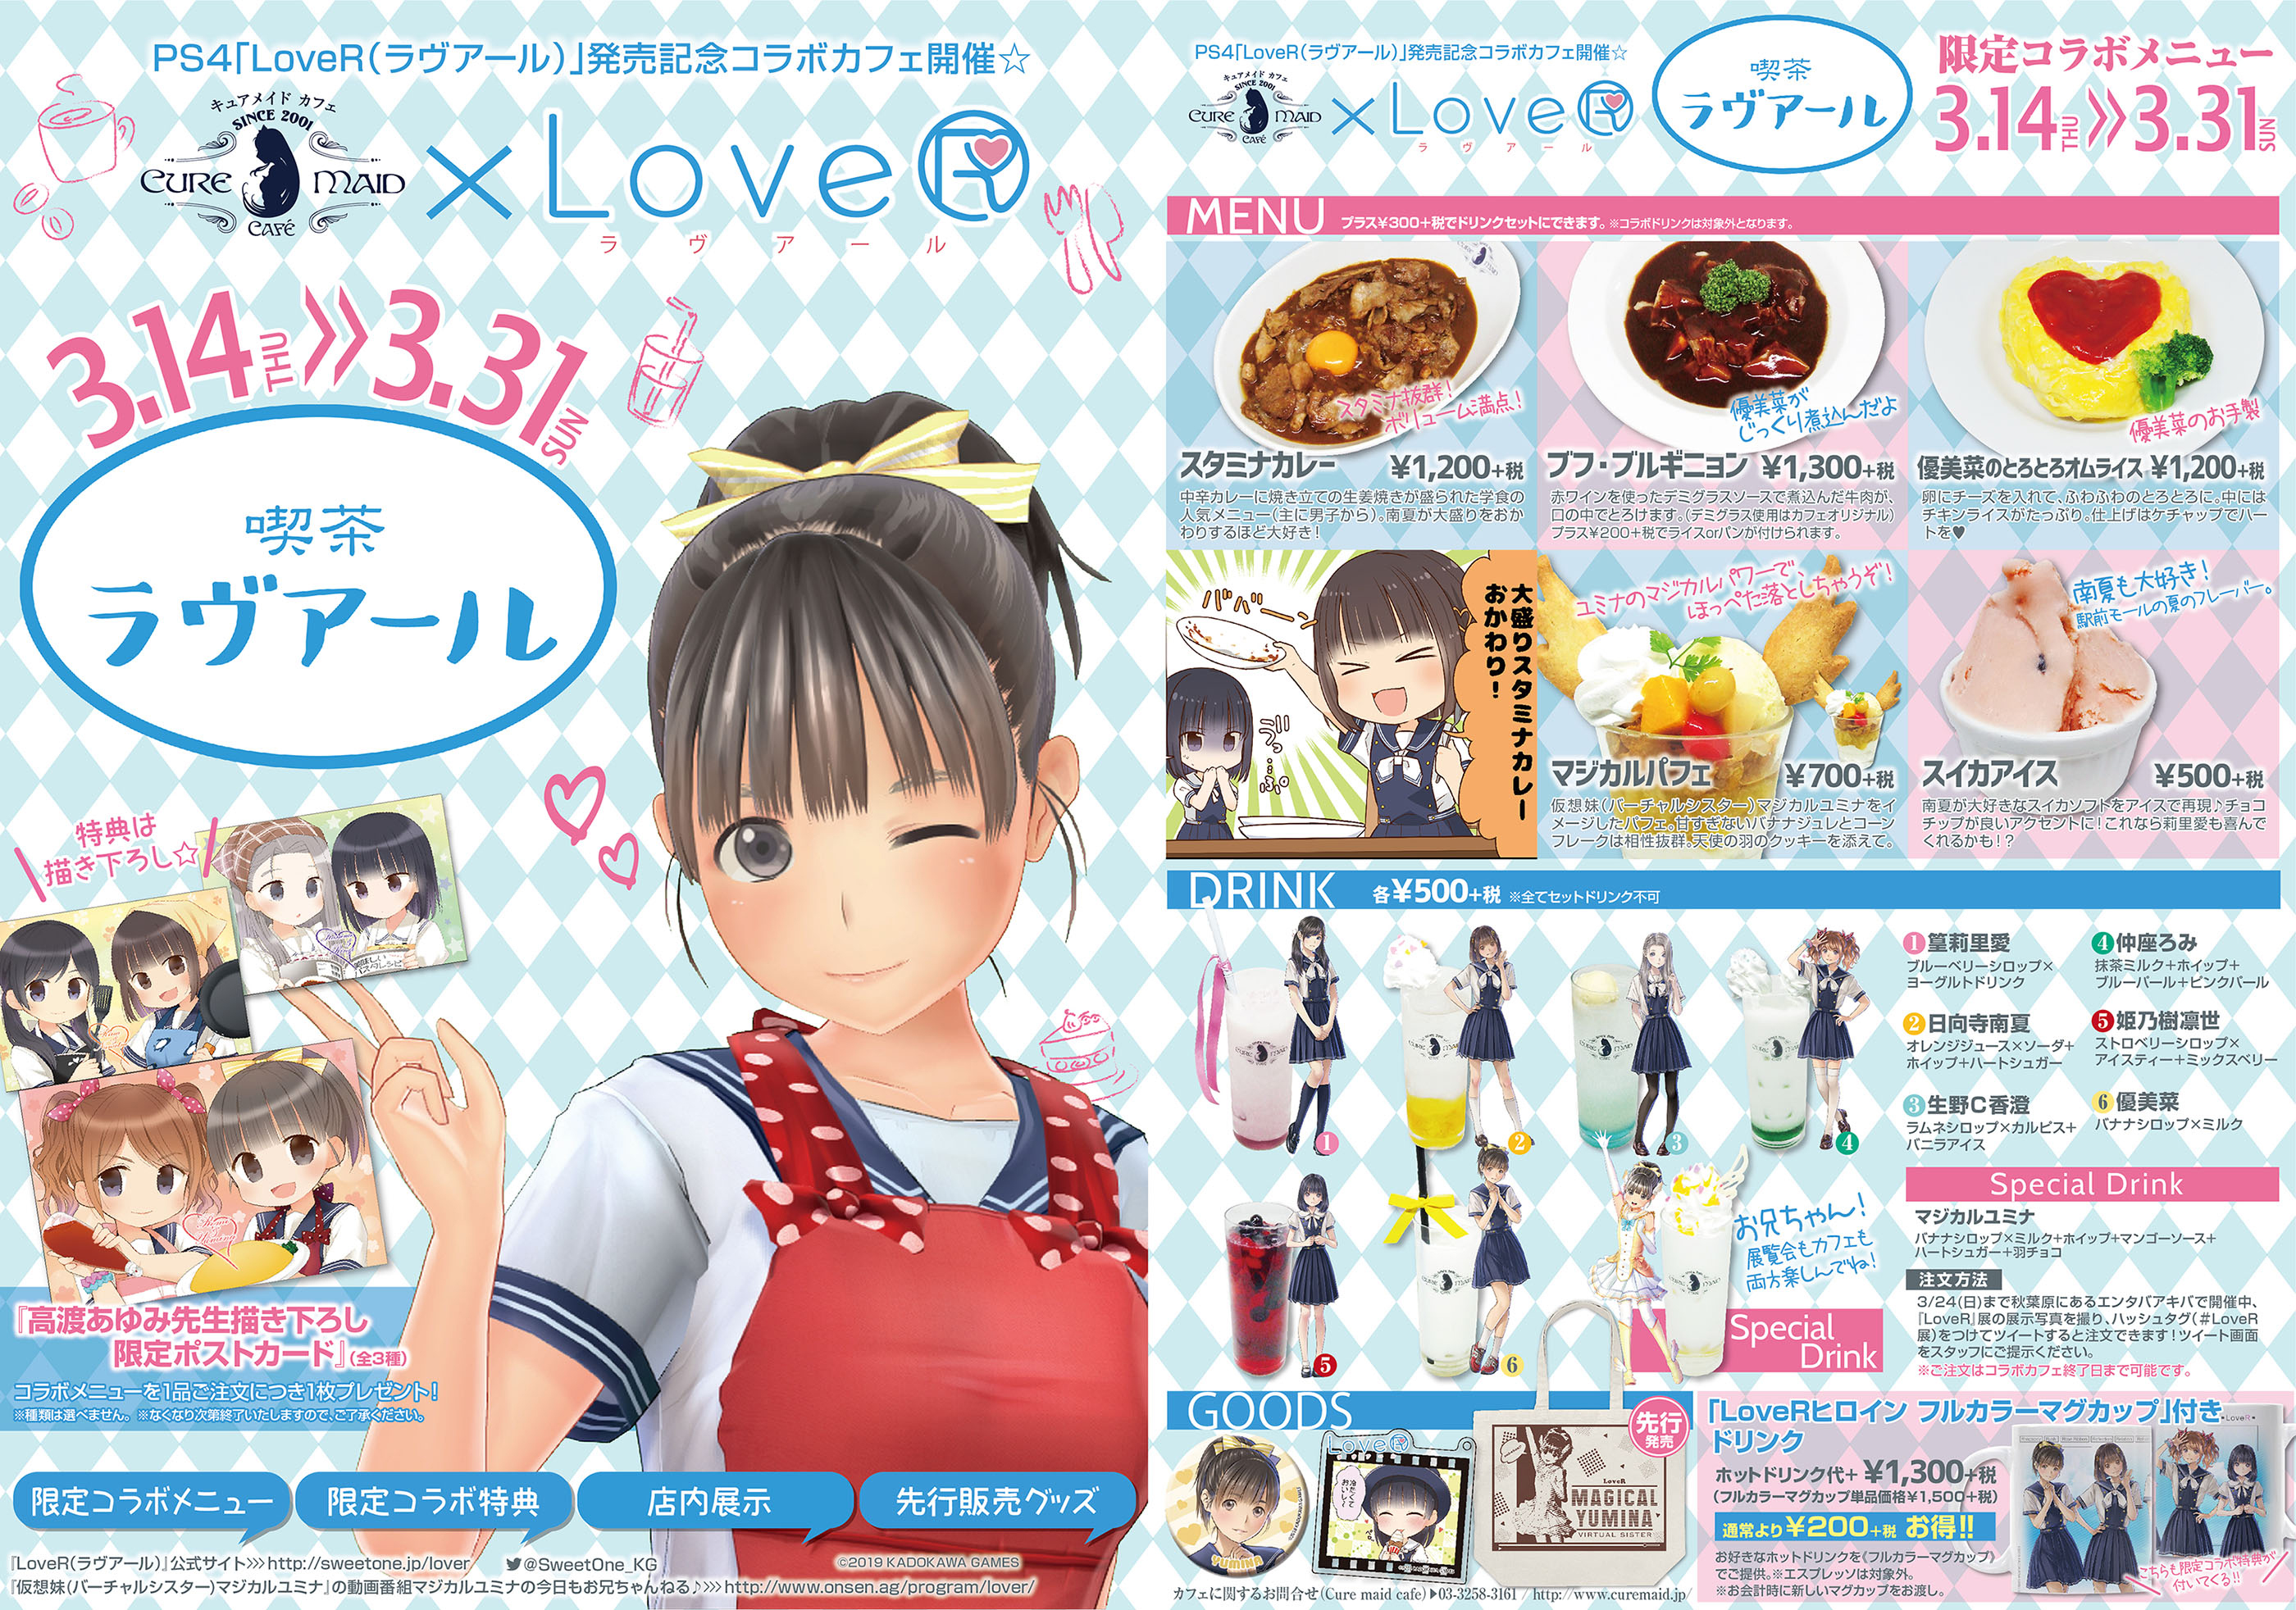 3/14(木)発売日当日『喫茶ラヴアール』開店！PS4ゲーム『LoveR』×『キュアメイドカフェ』コラボカフェ開催決定！